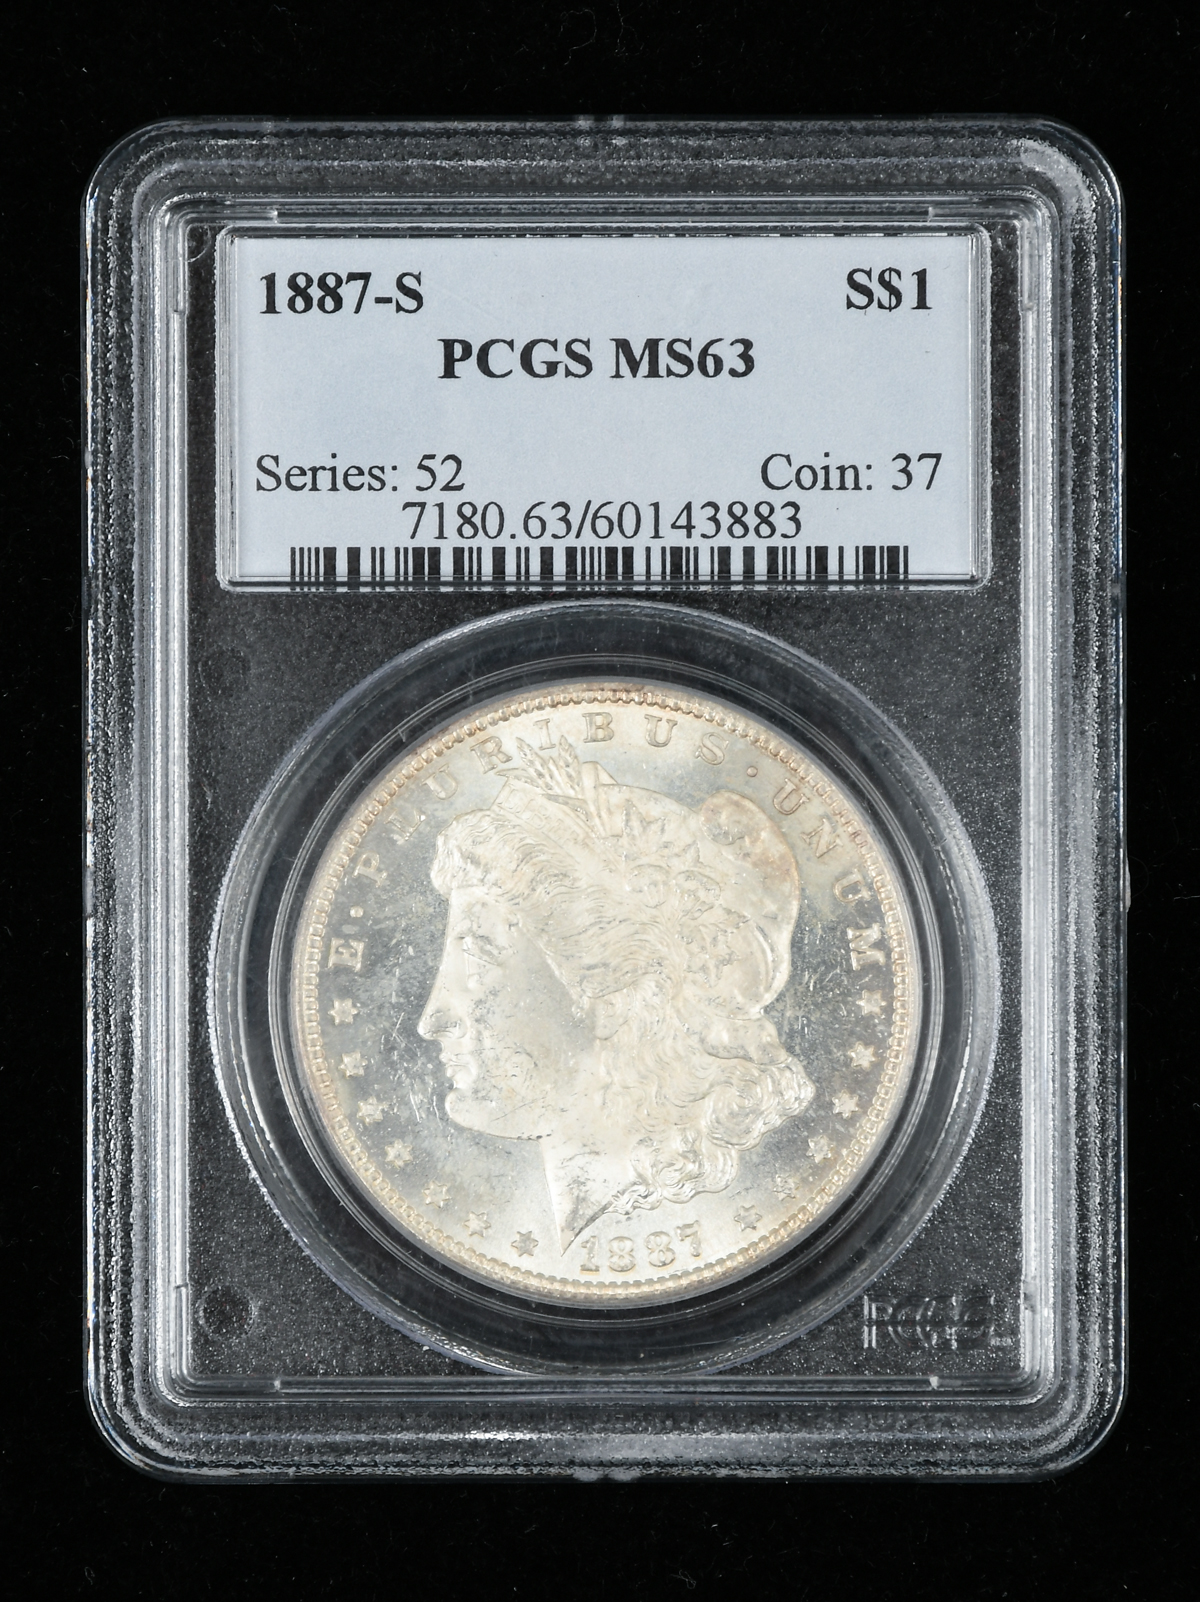 U.S. MINT 1887-S MORGAN DOLLAR